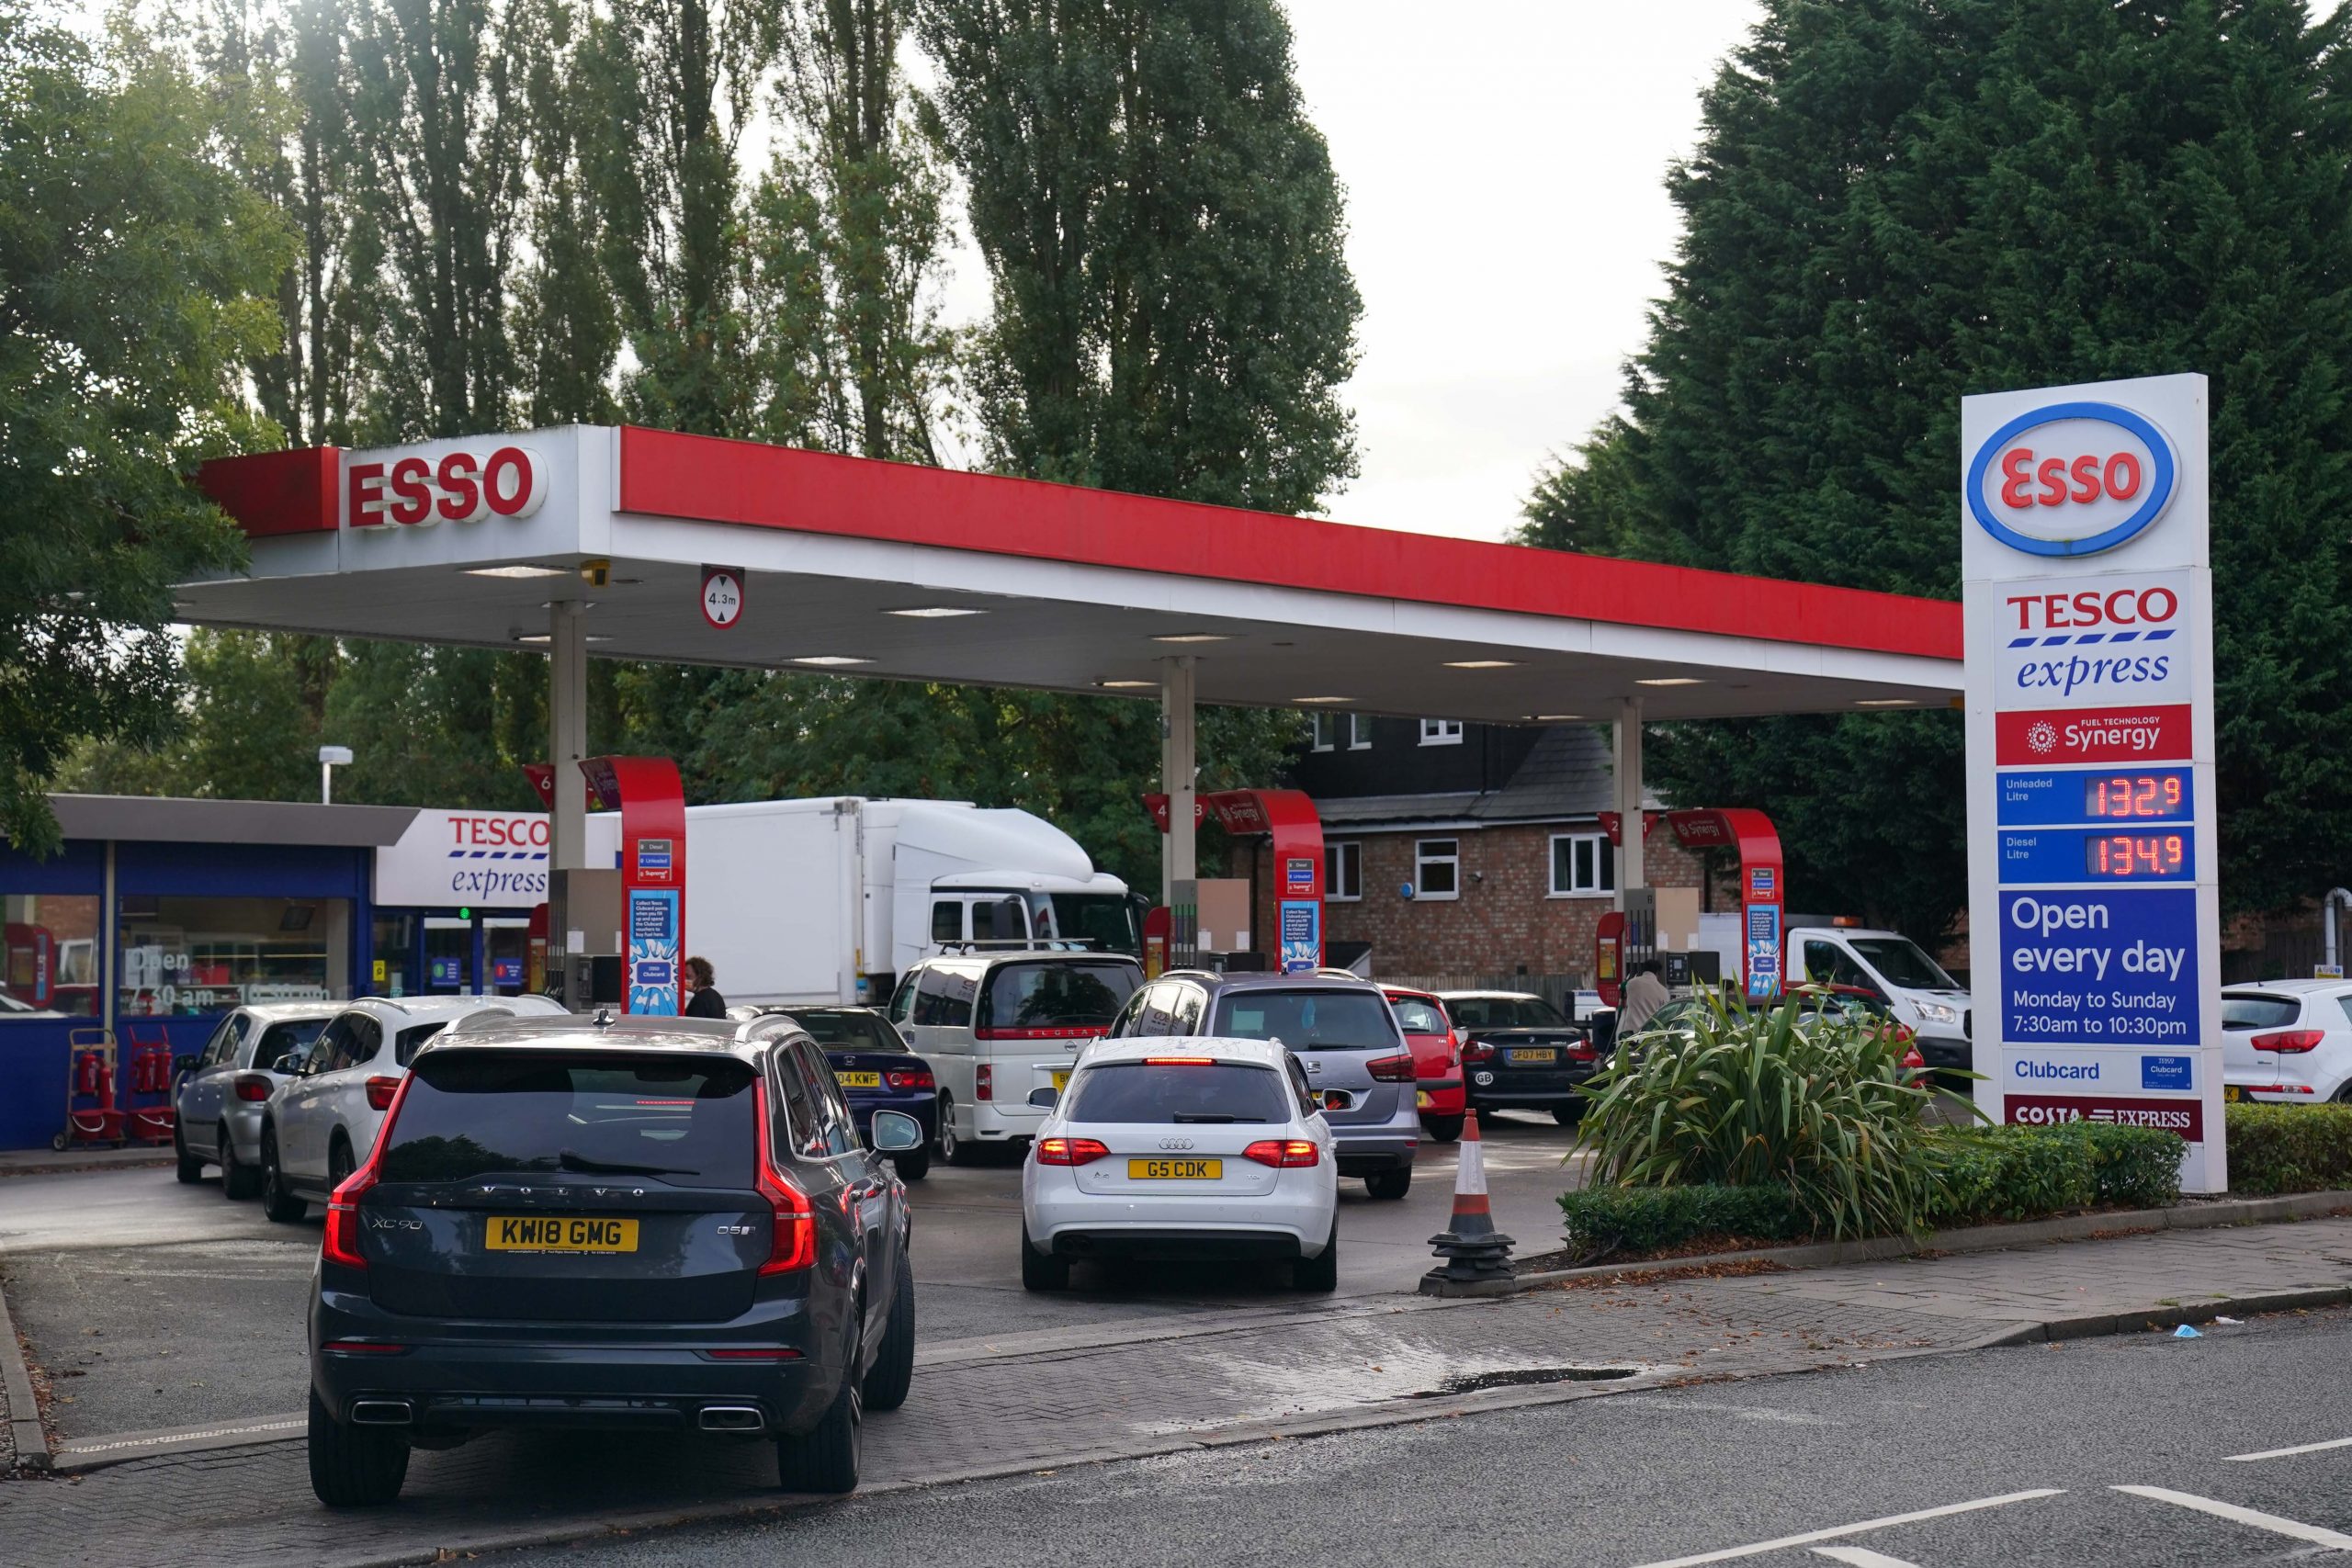 Autofahrer stehen an einer Esso-Tankstelle in Bournville, Birmingham, Schlange, um zu tanken.